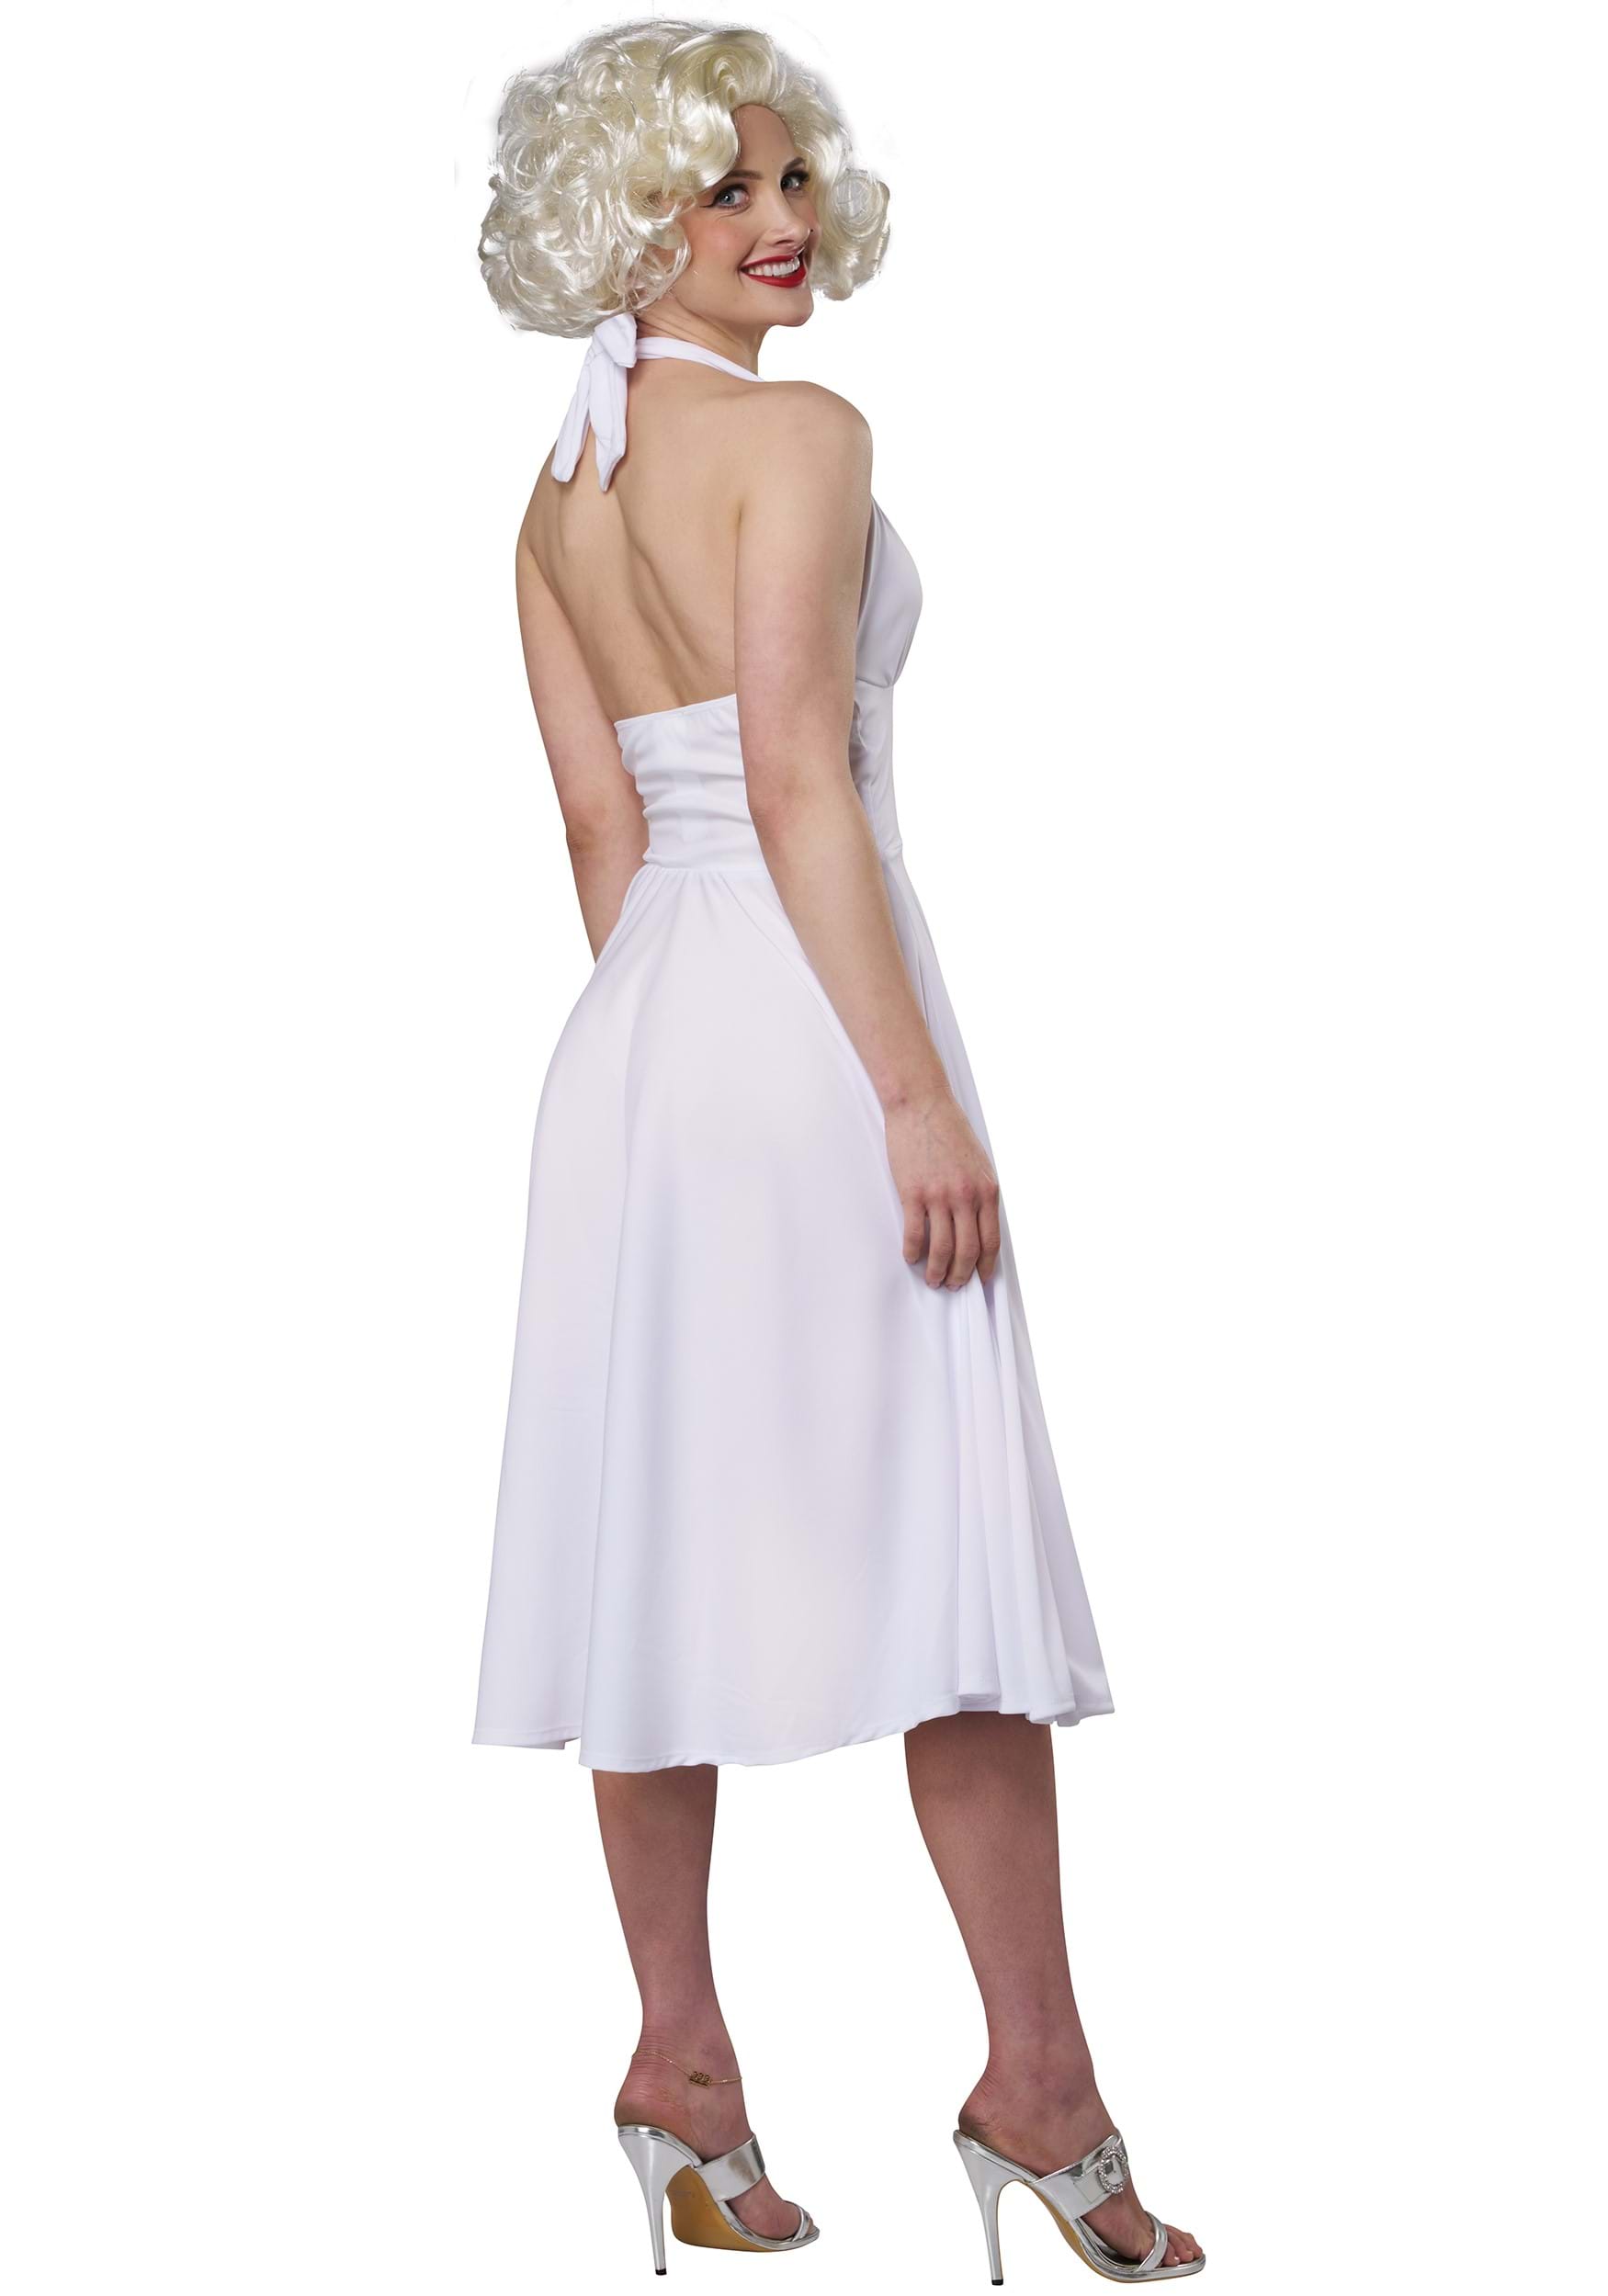 Marilyn Monroe Dress Fancy Dress Costume , Sexy White Fancy Dress Costume Dress